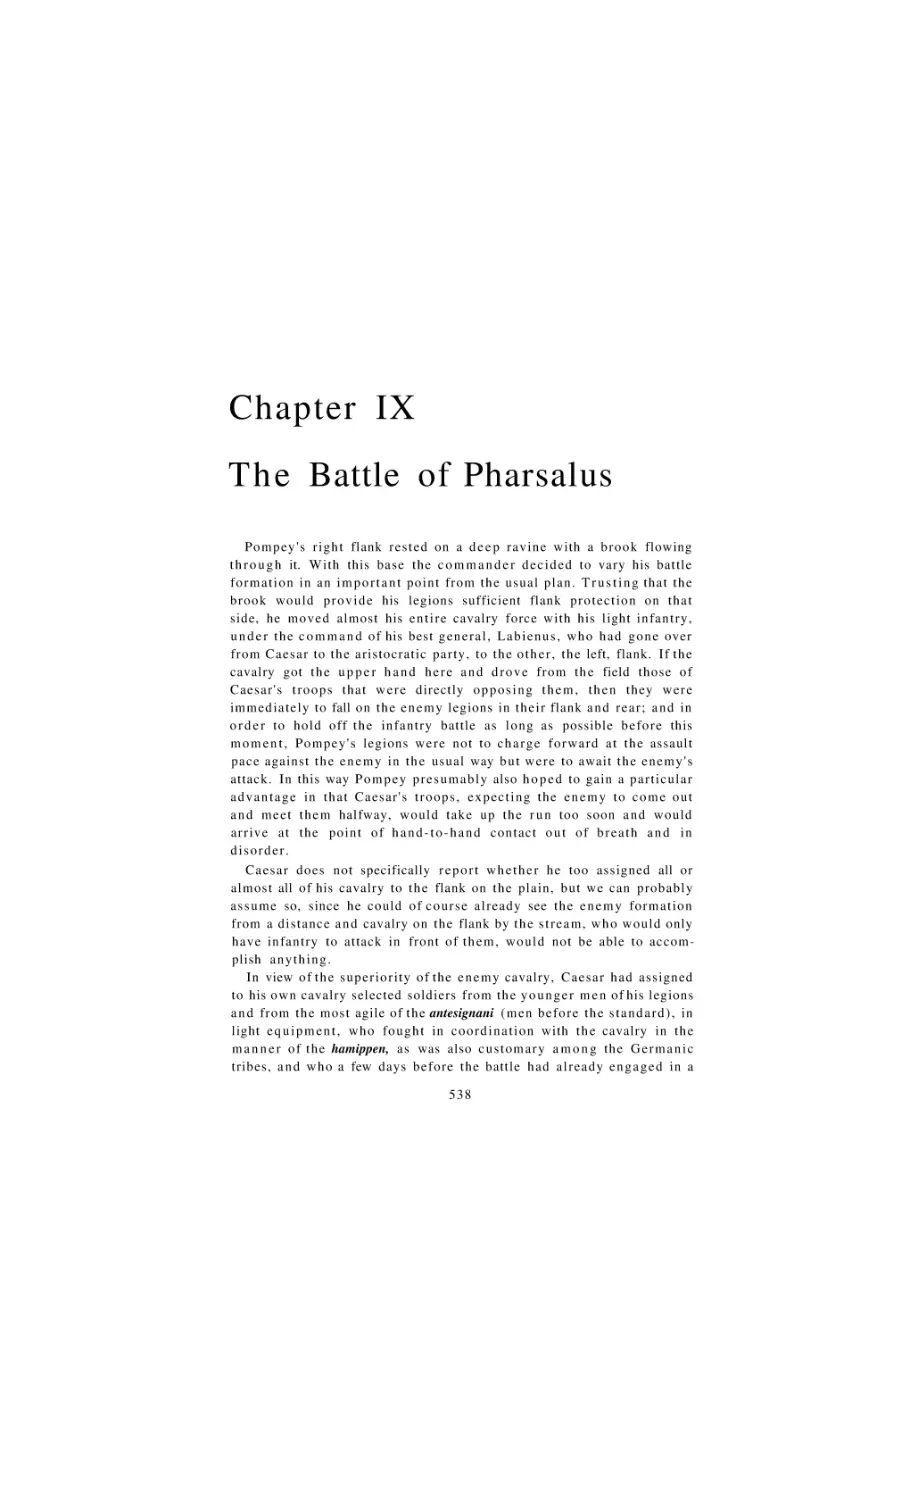 The Battle of Pharsalus